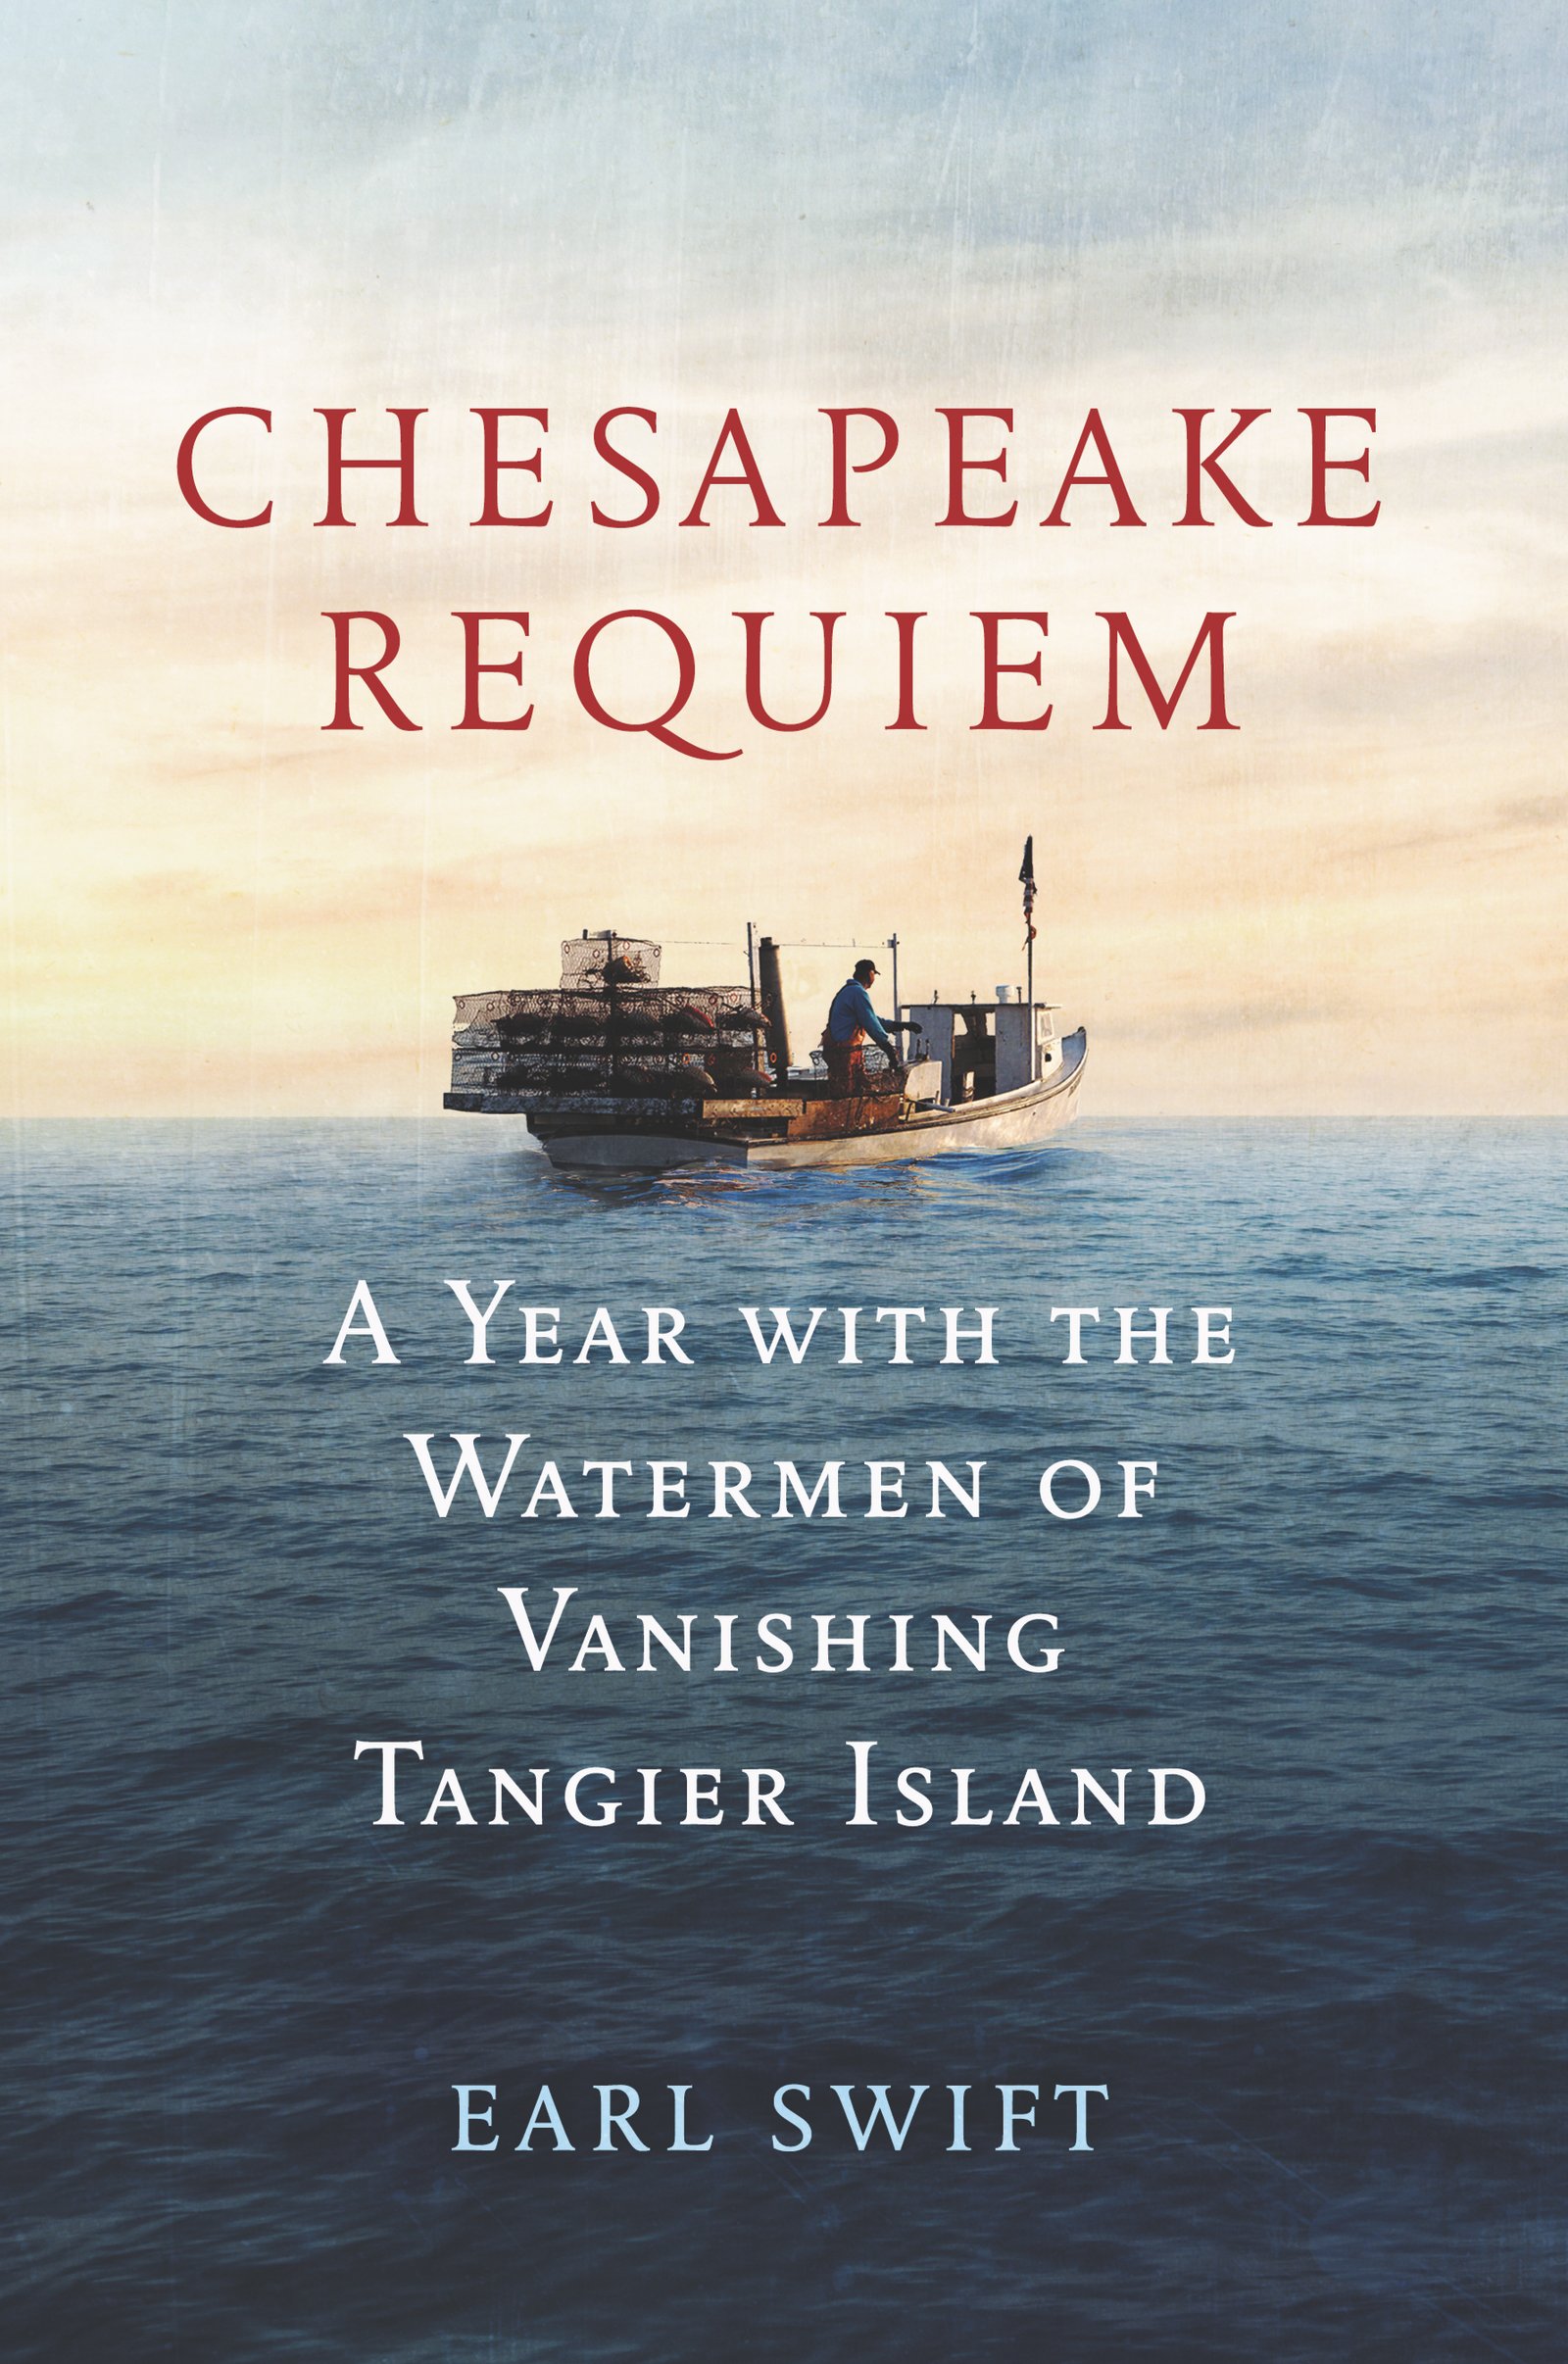 Image for "Chesapeake Requiem"